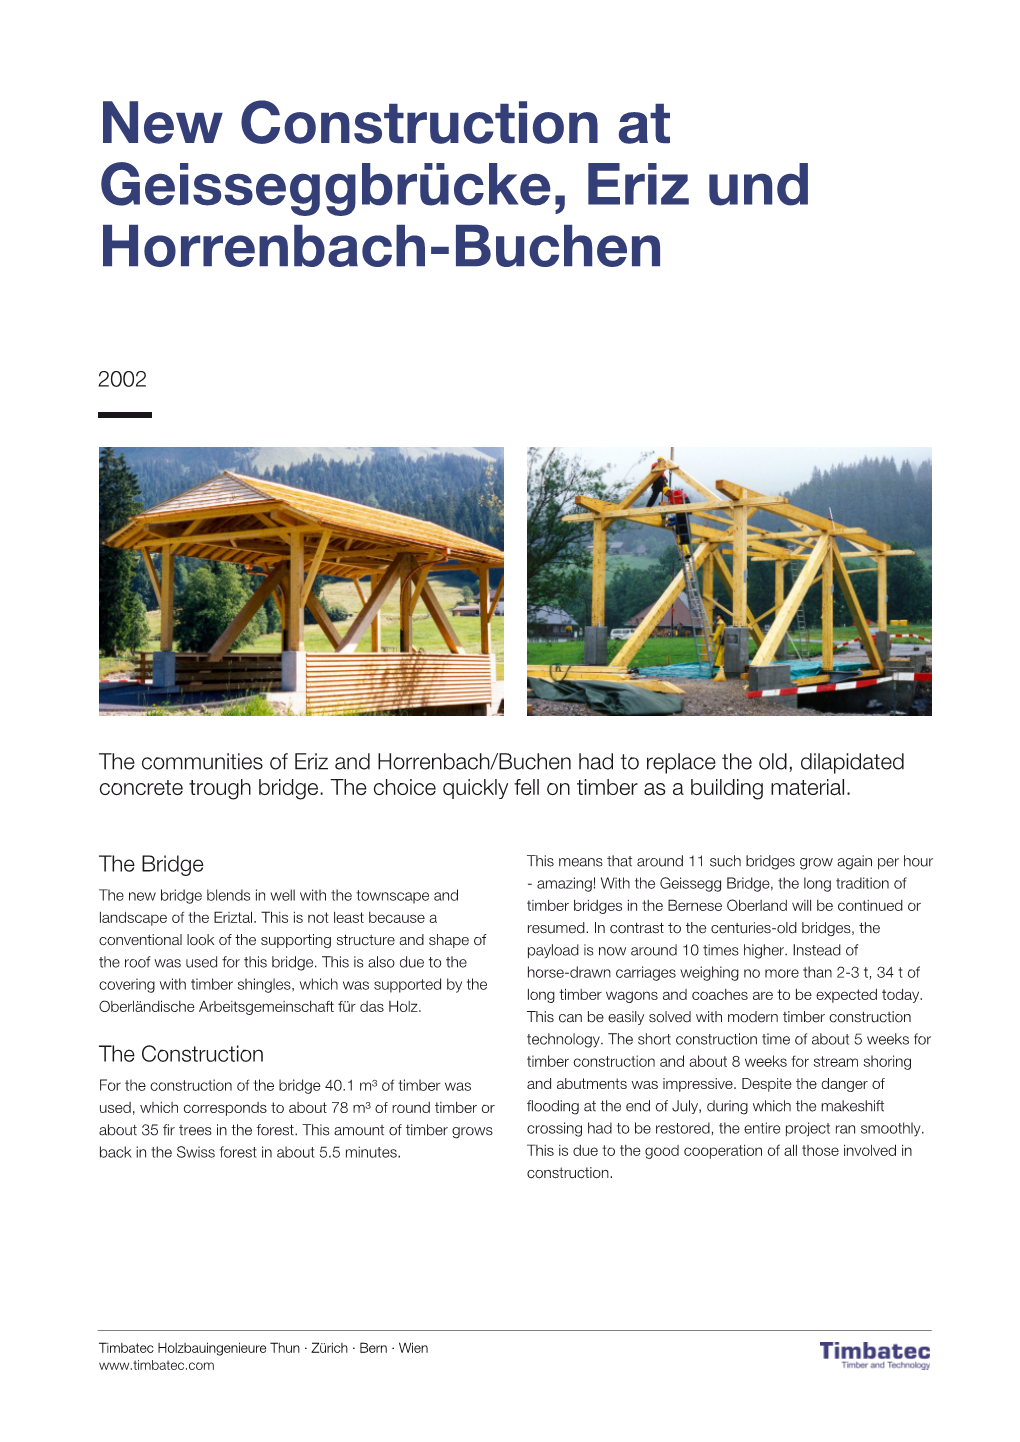 New Construction at Geisseggbrücke, Eriz Und Horrenbach-Buchen